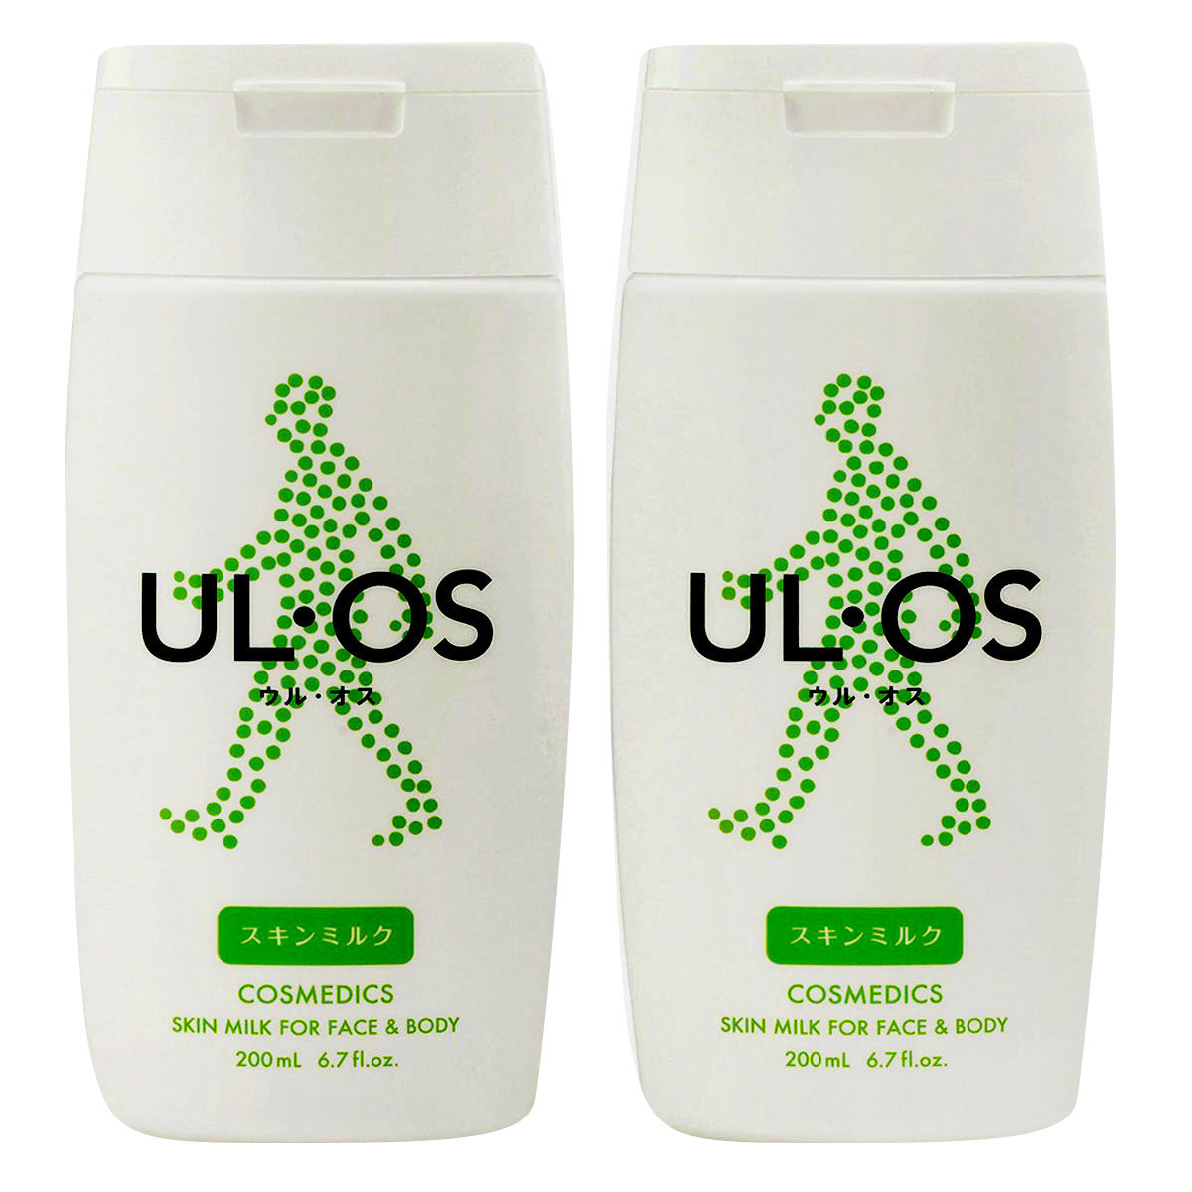 우르오스 스킨로션 200ml x 2 개 스킨밀크 중성 건성 피부용 Ulos Skin Lotion 올인원 